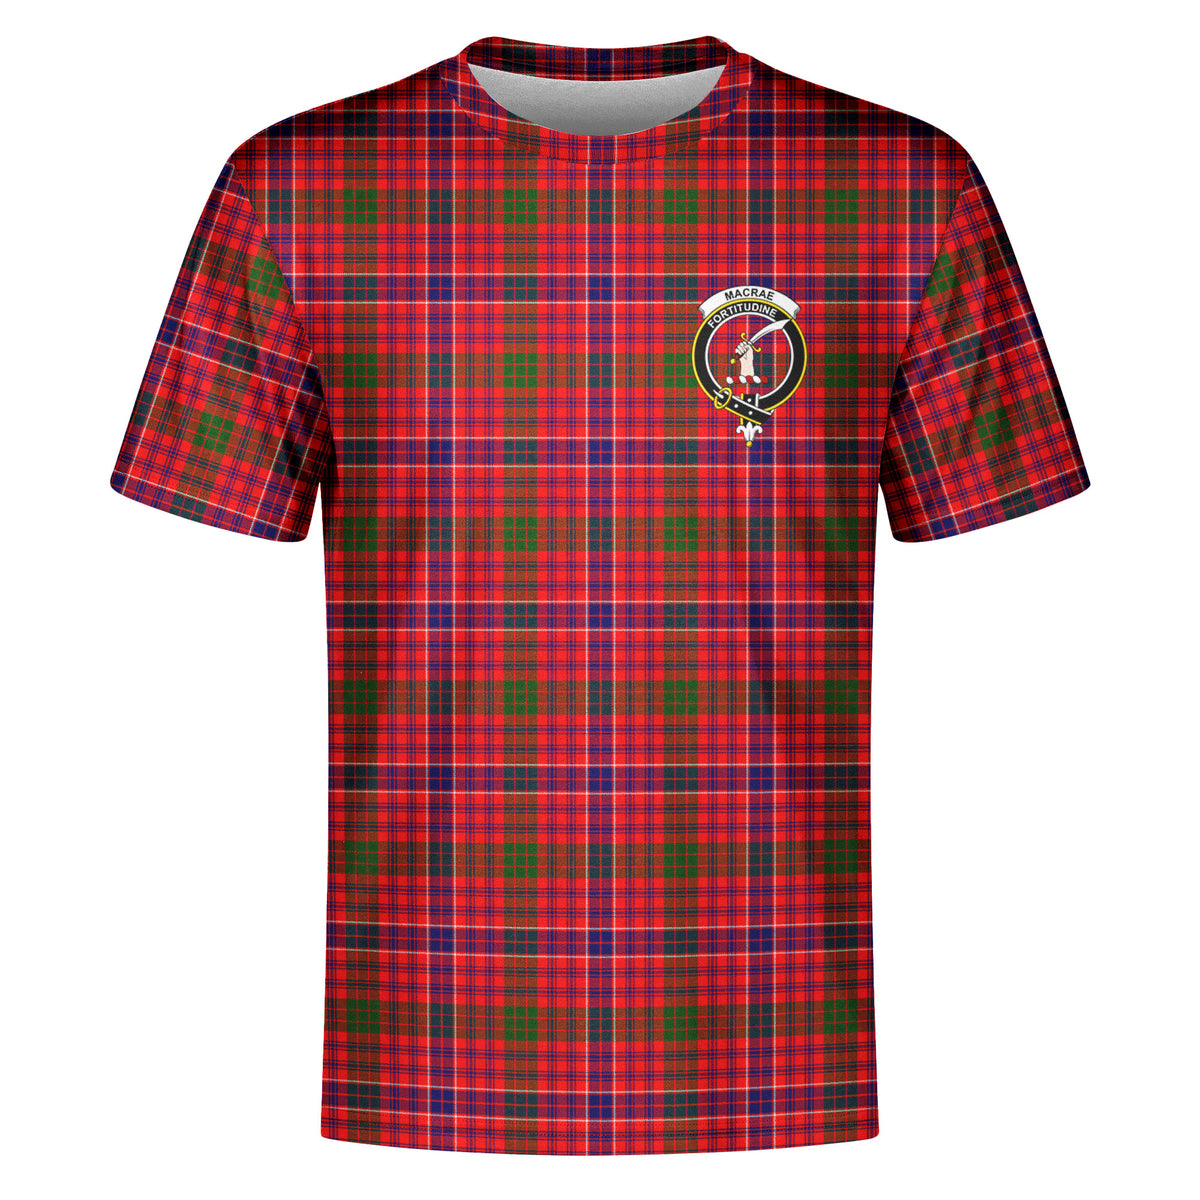 MacRae Modern Tartan Crest T-shirt